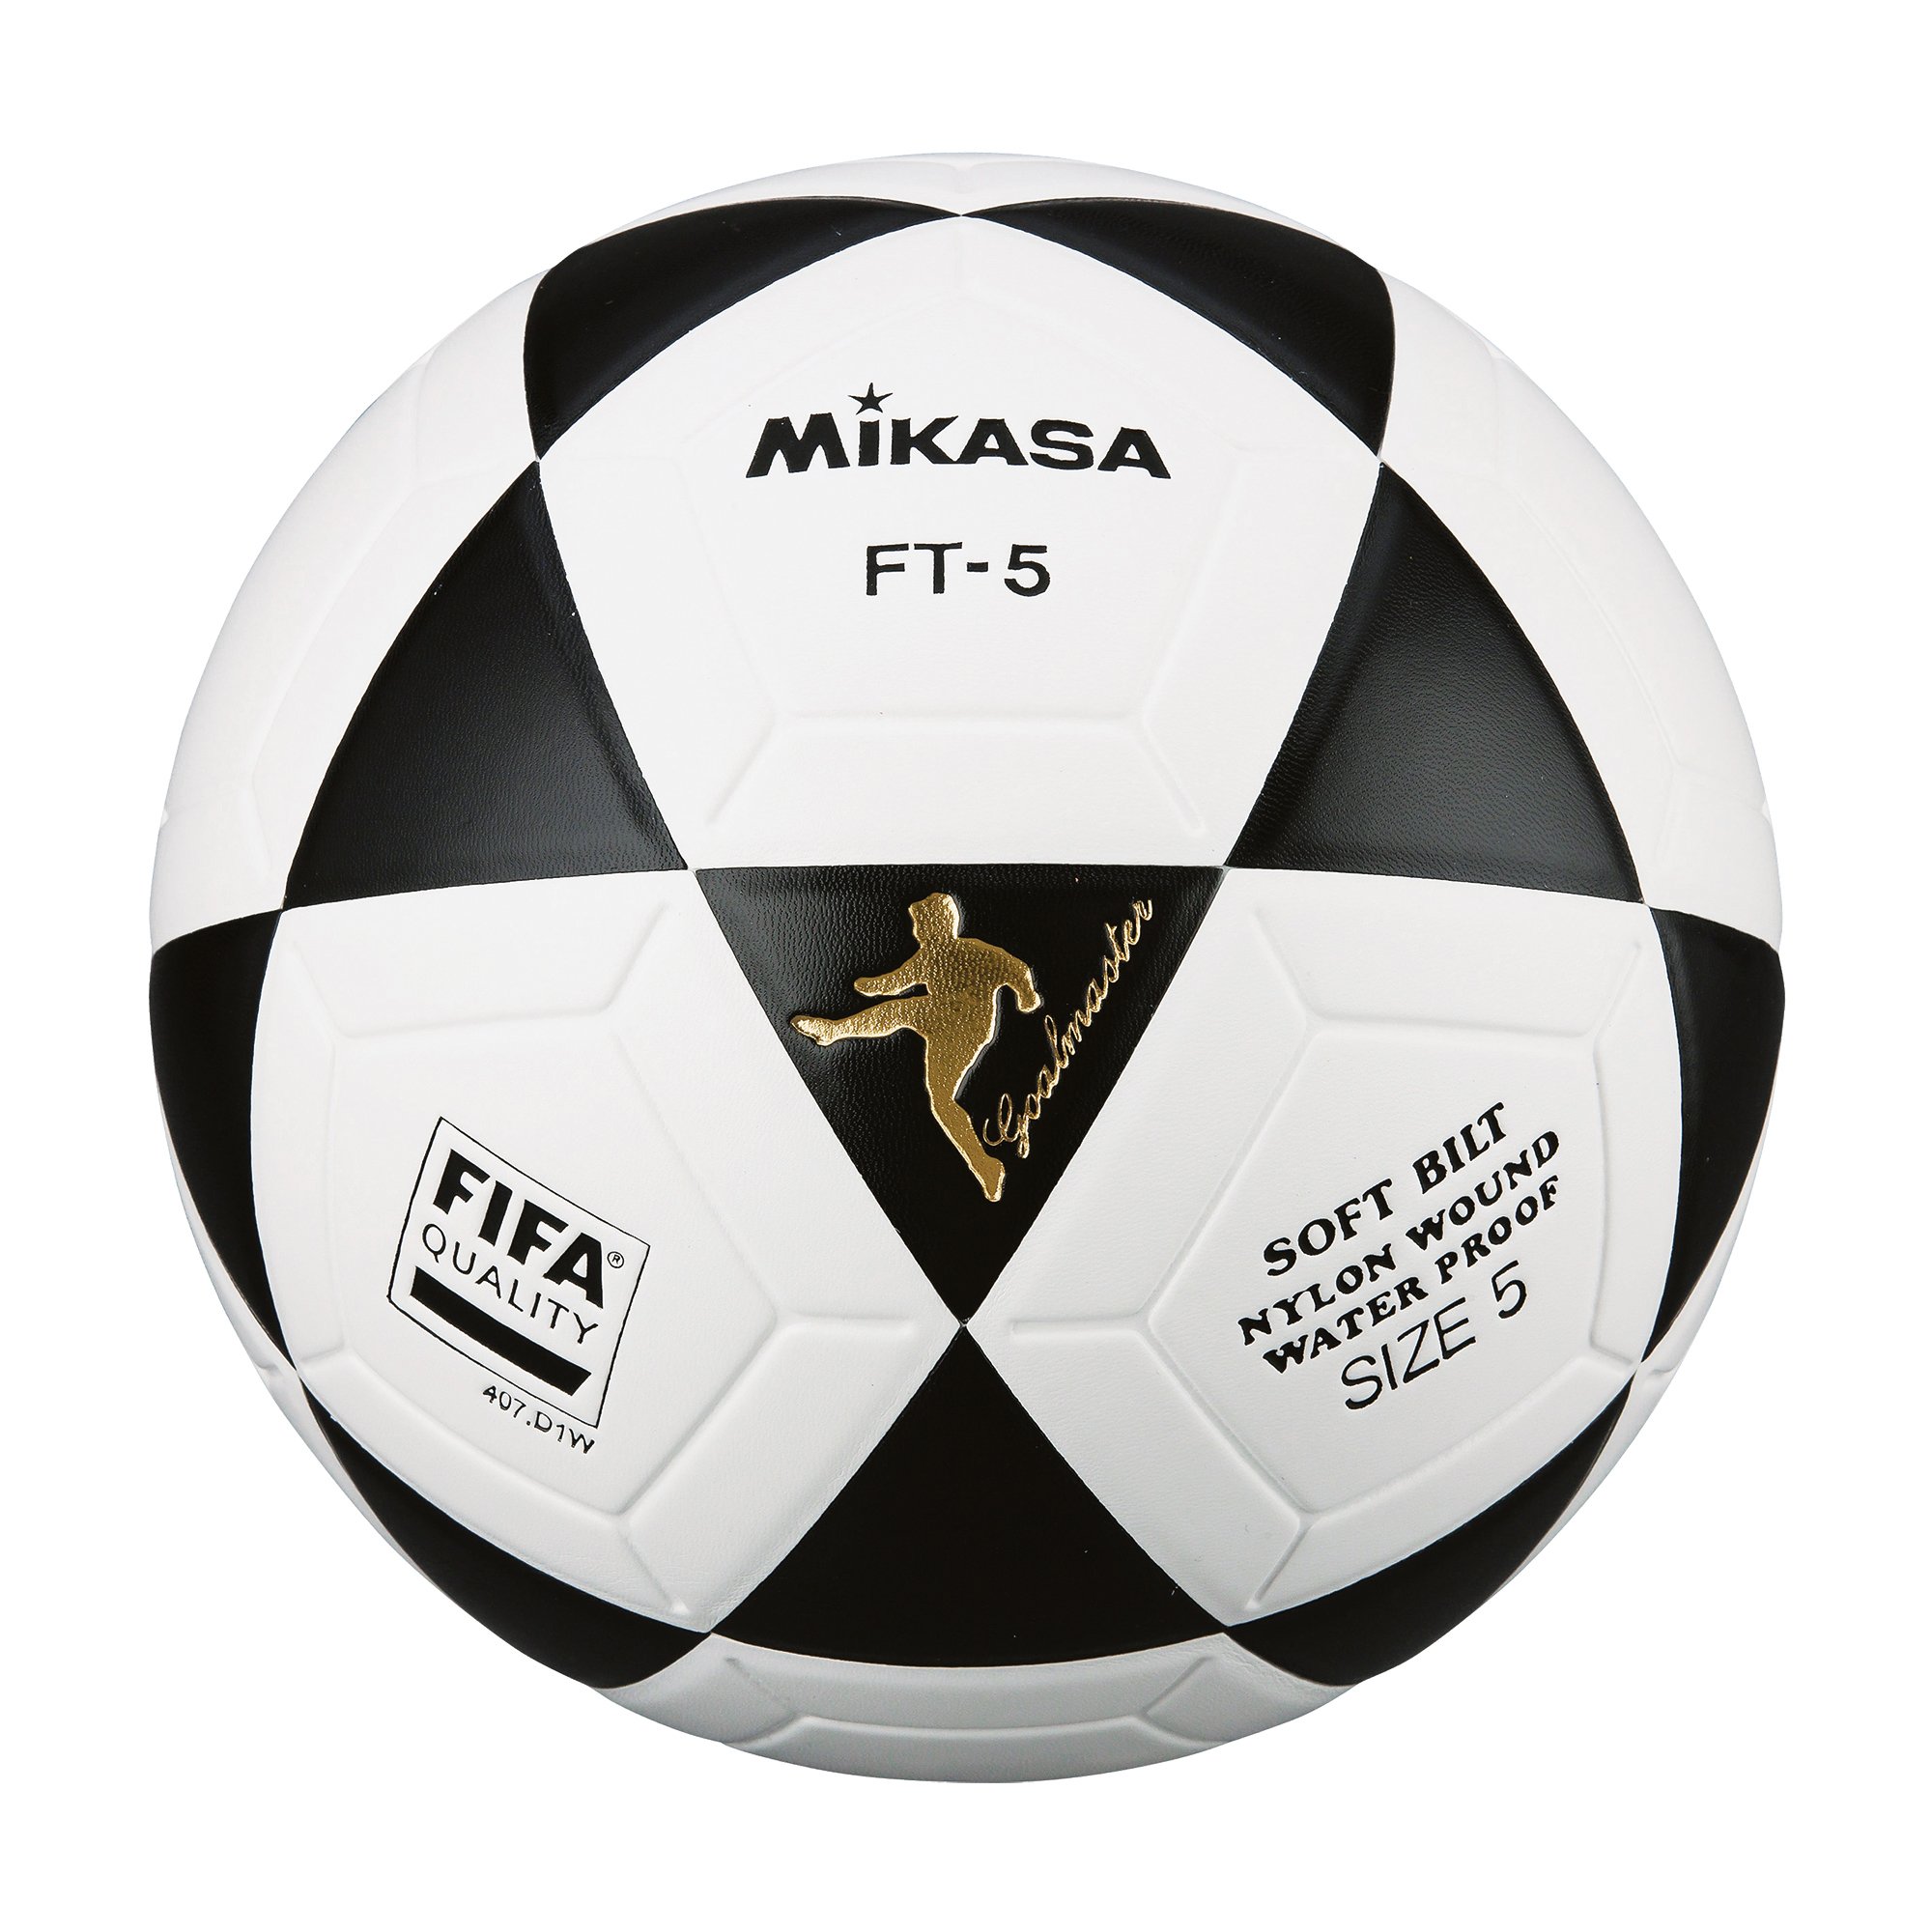 Mikasa Footvolleyball FT-5 Pro FIFA